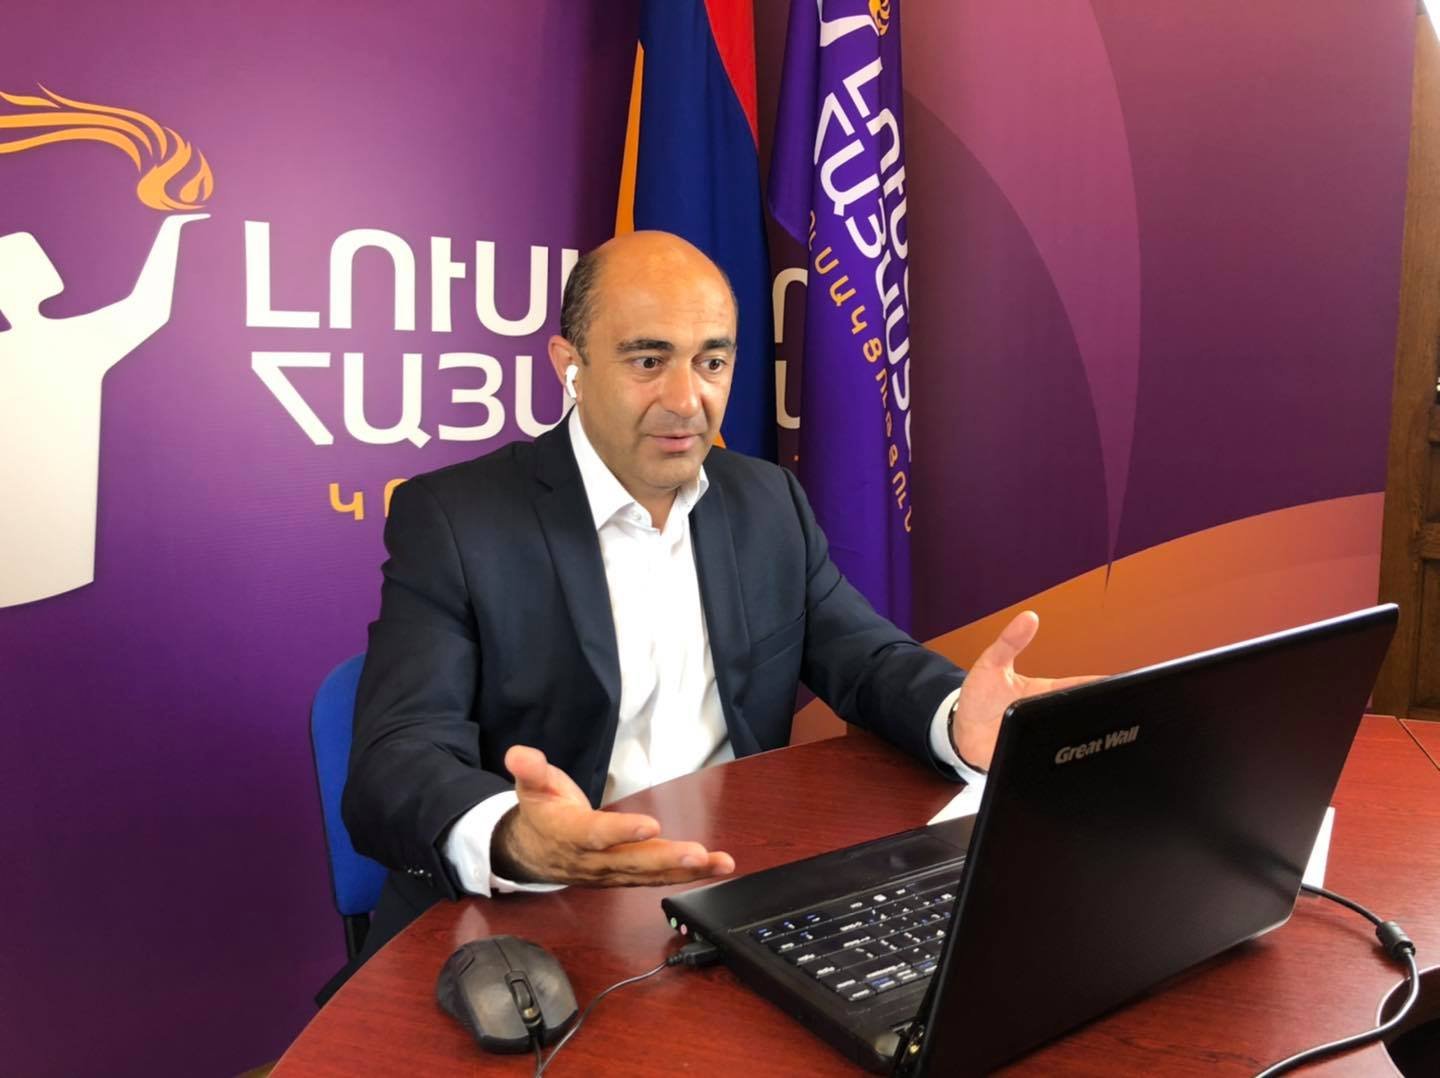 Ալիևը քաղաքականացնում է հումանիտար հարցը և բացահայտում, որ հայ ռազմագերիները որպես պատանդ են պահվում Ադրբեջանում. Մարուքյանի ելույթը ԵԽԽՎ-ում